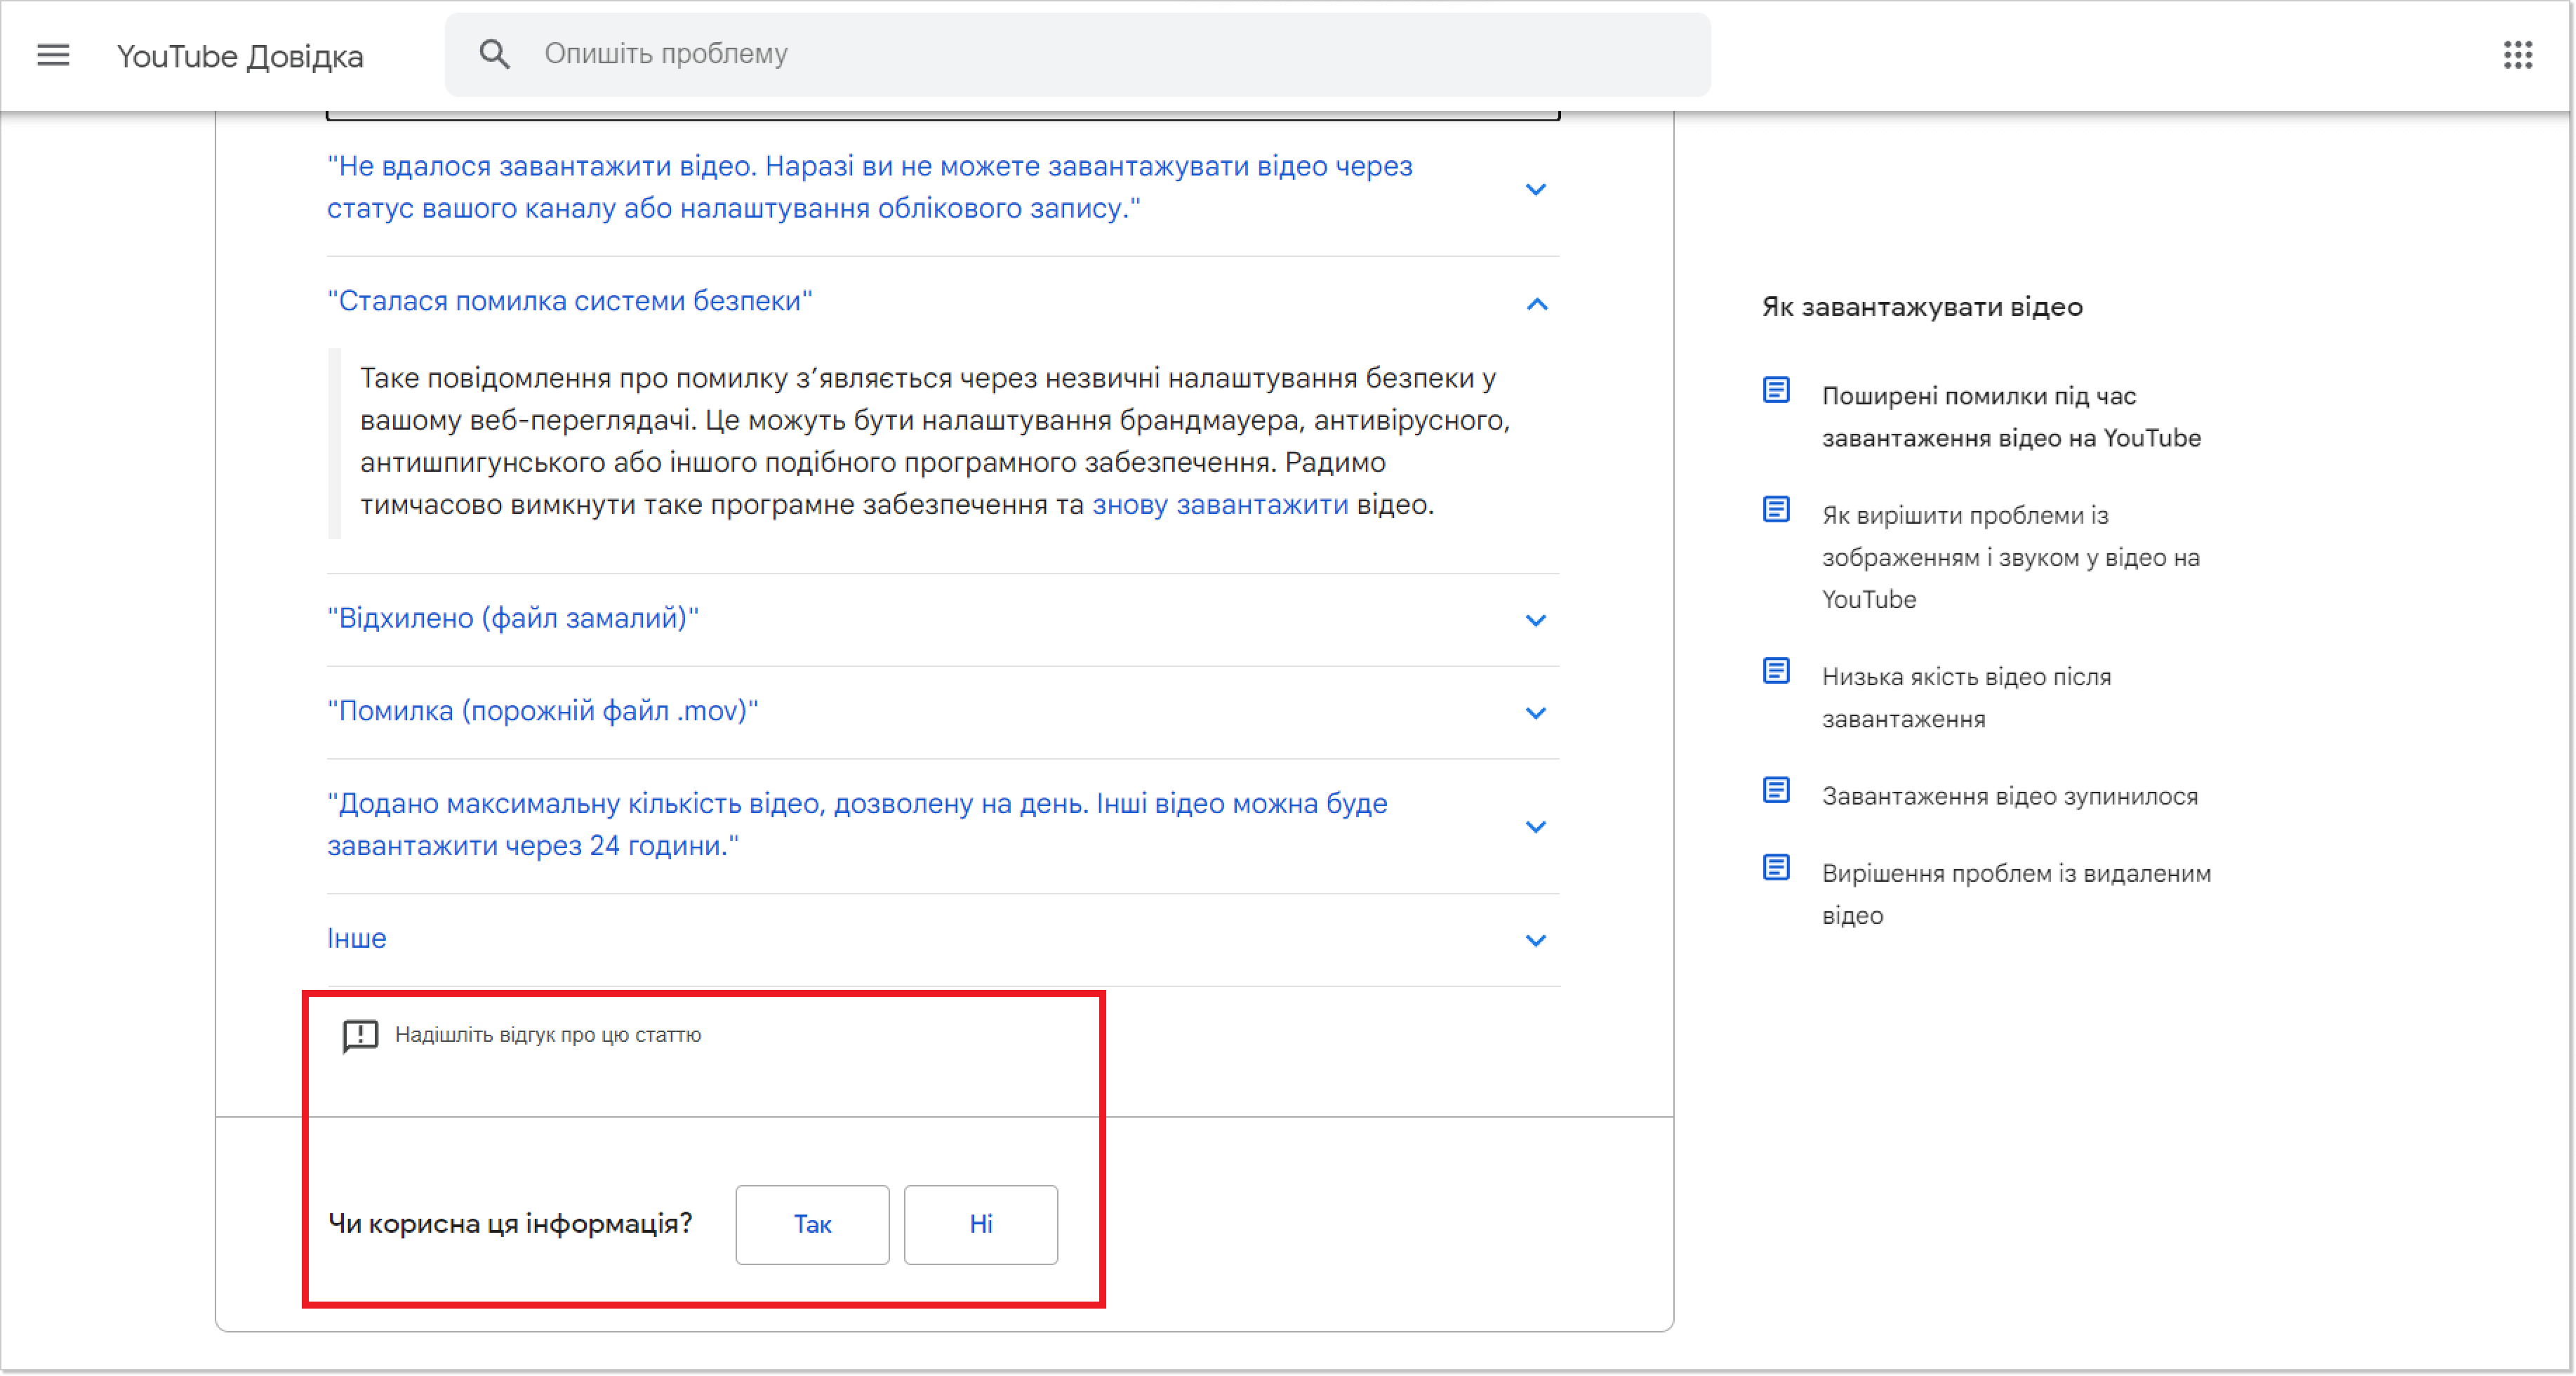 YouTube FAQ page screenshot